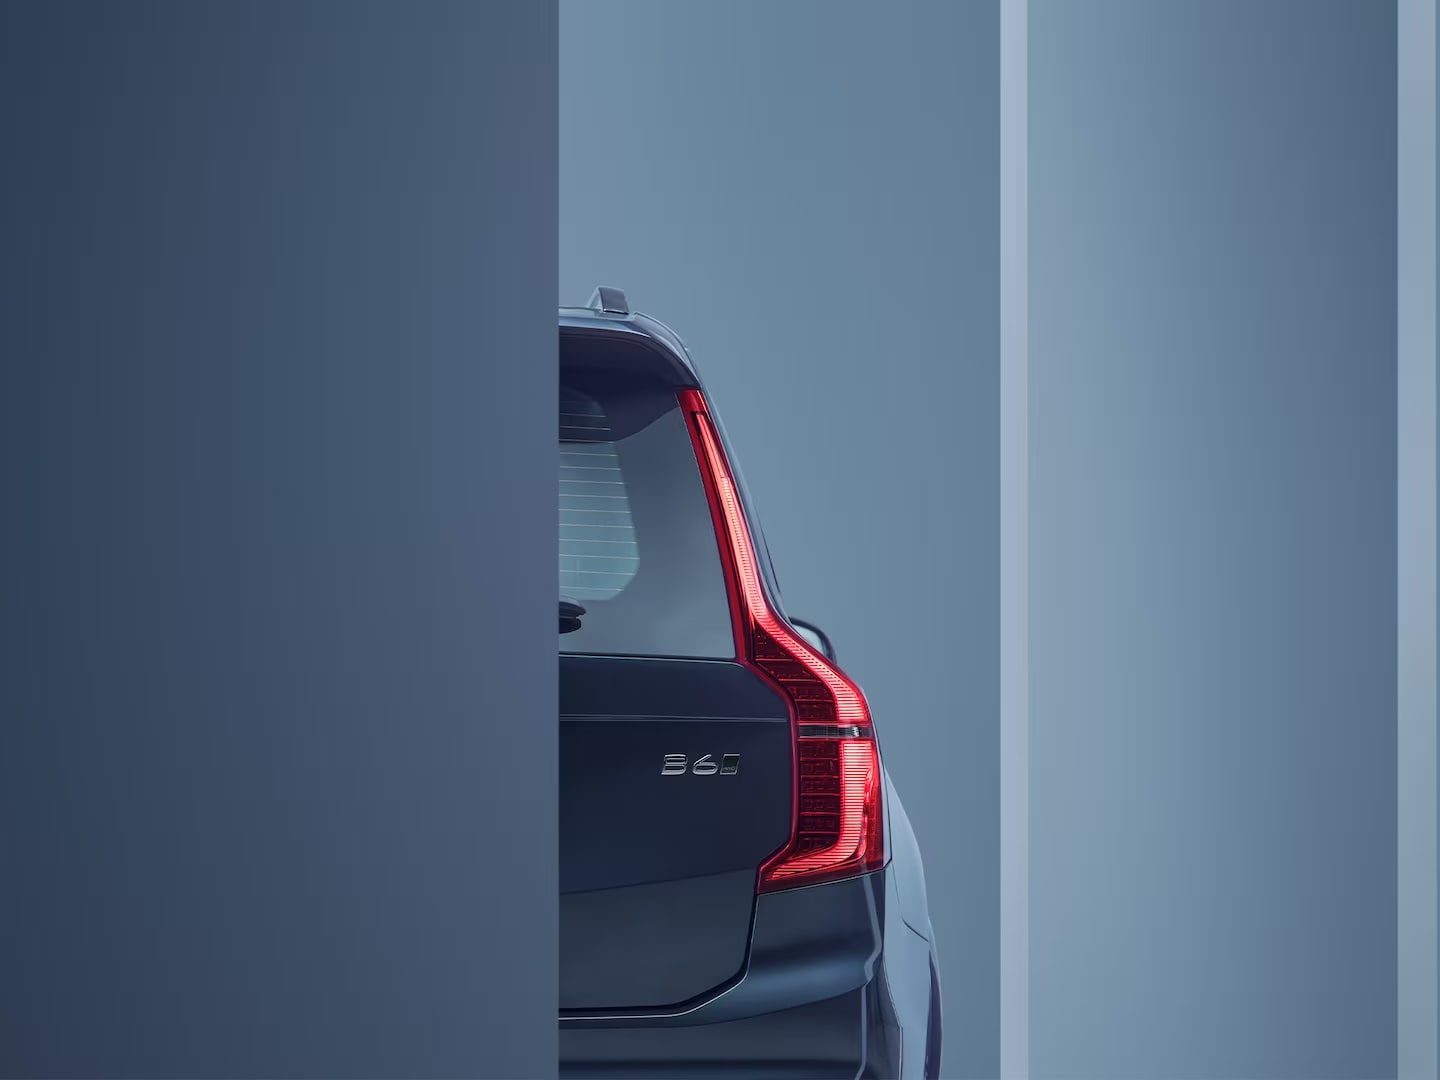 Dettaglio del design delle luci posteriori di Volvo XC90 mild hybrid.